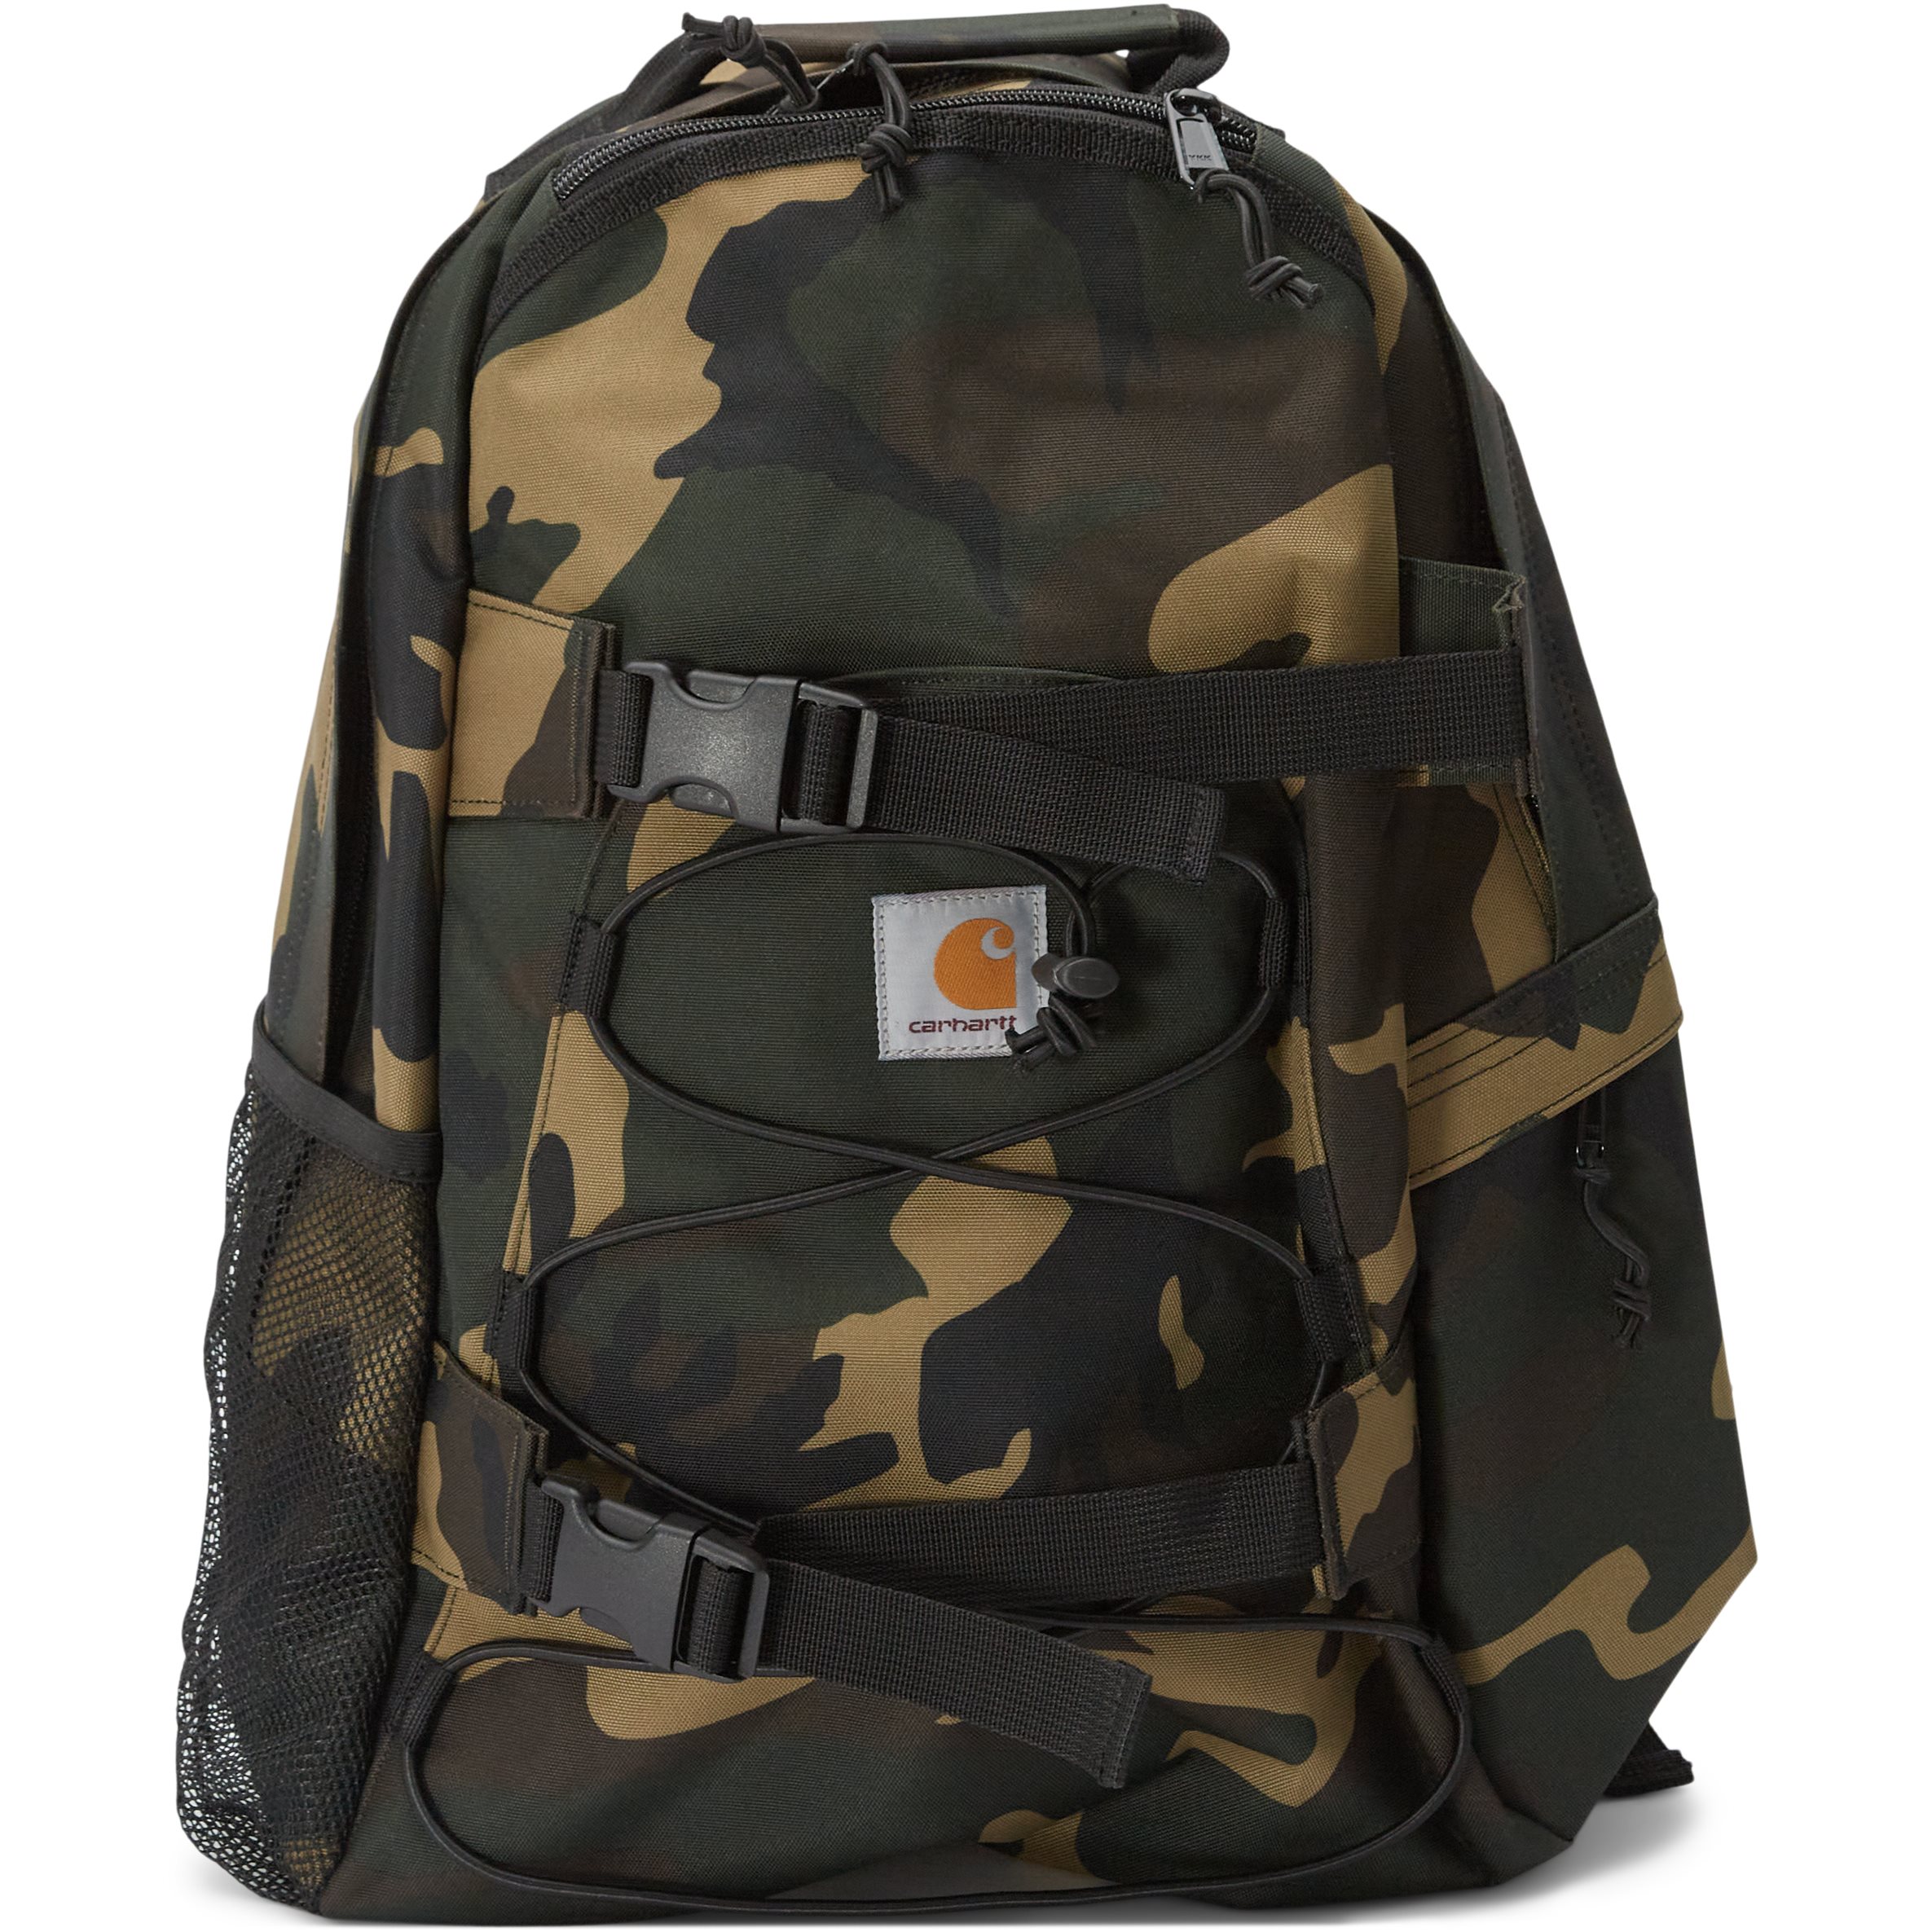 Kickflip Backpack - Tasker - Army